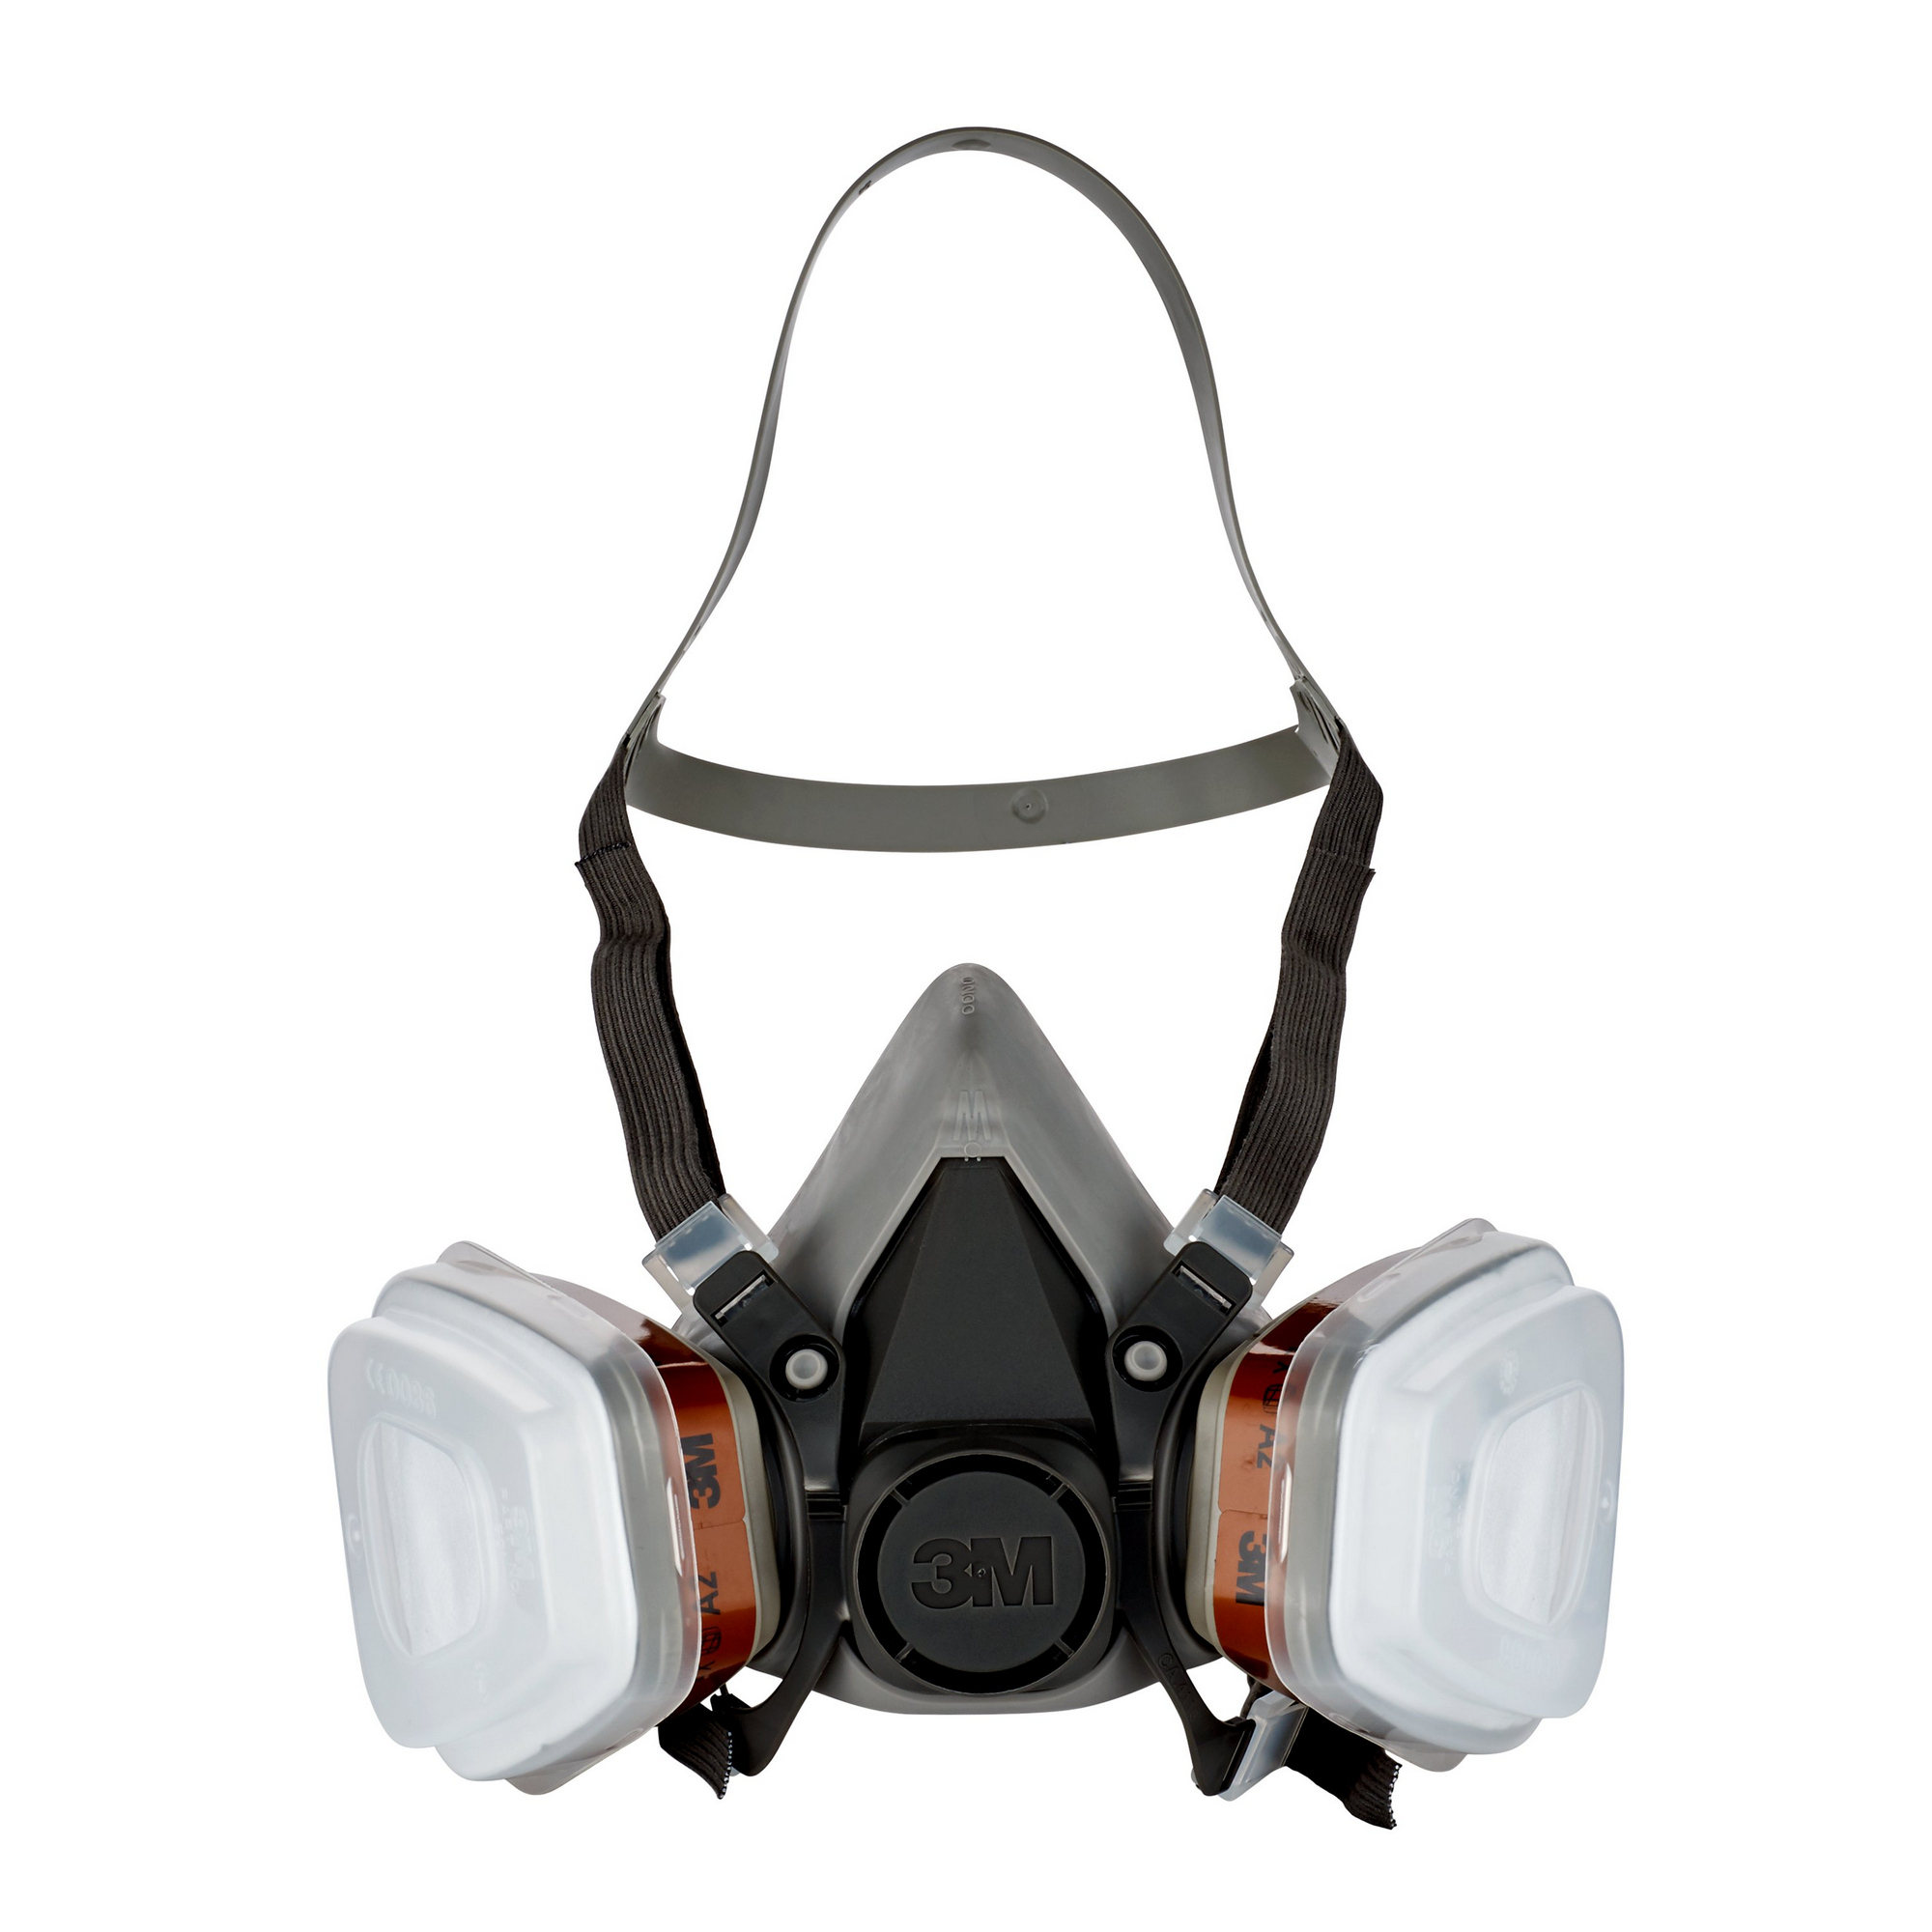 A2P2-Atemschutzmaske für Farbspritzarbeiten '6200' 1 Stück + product picture